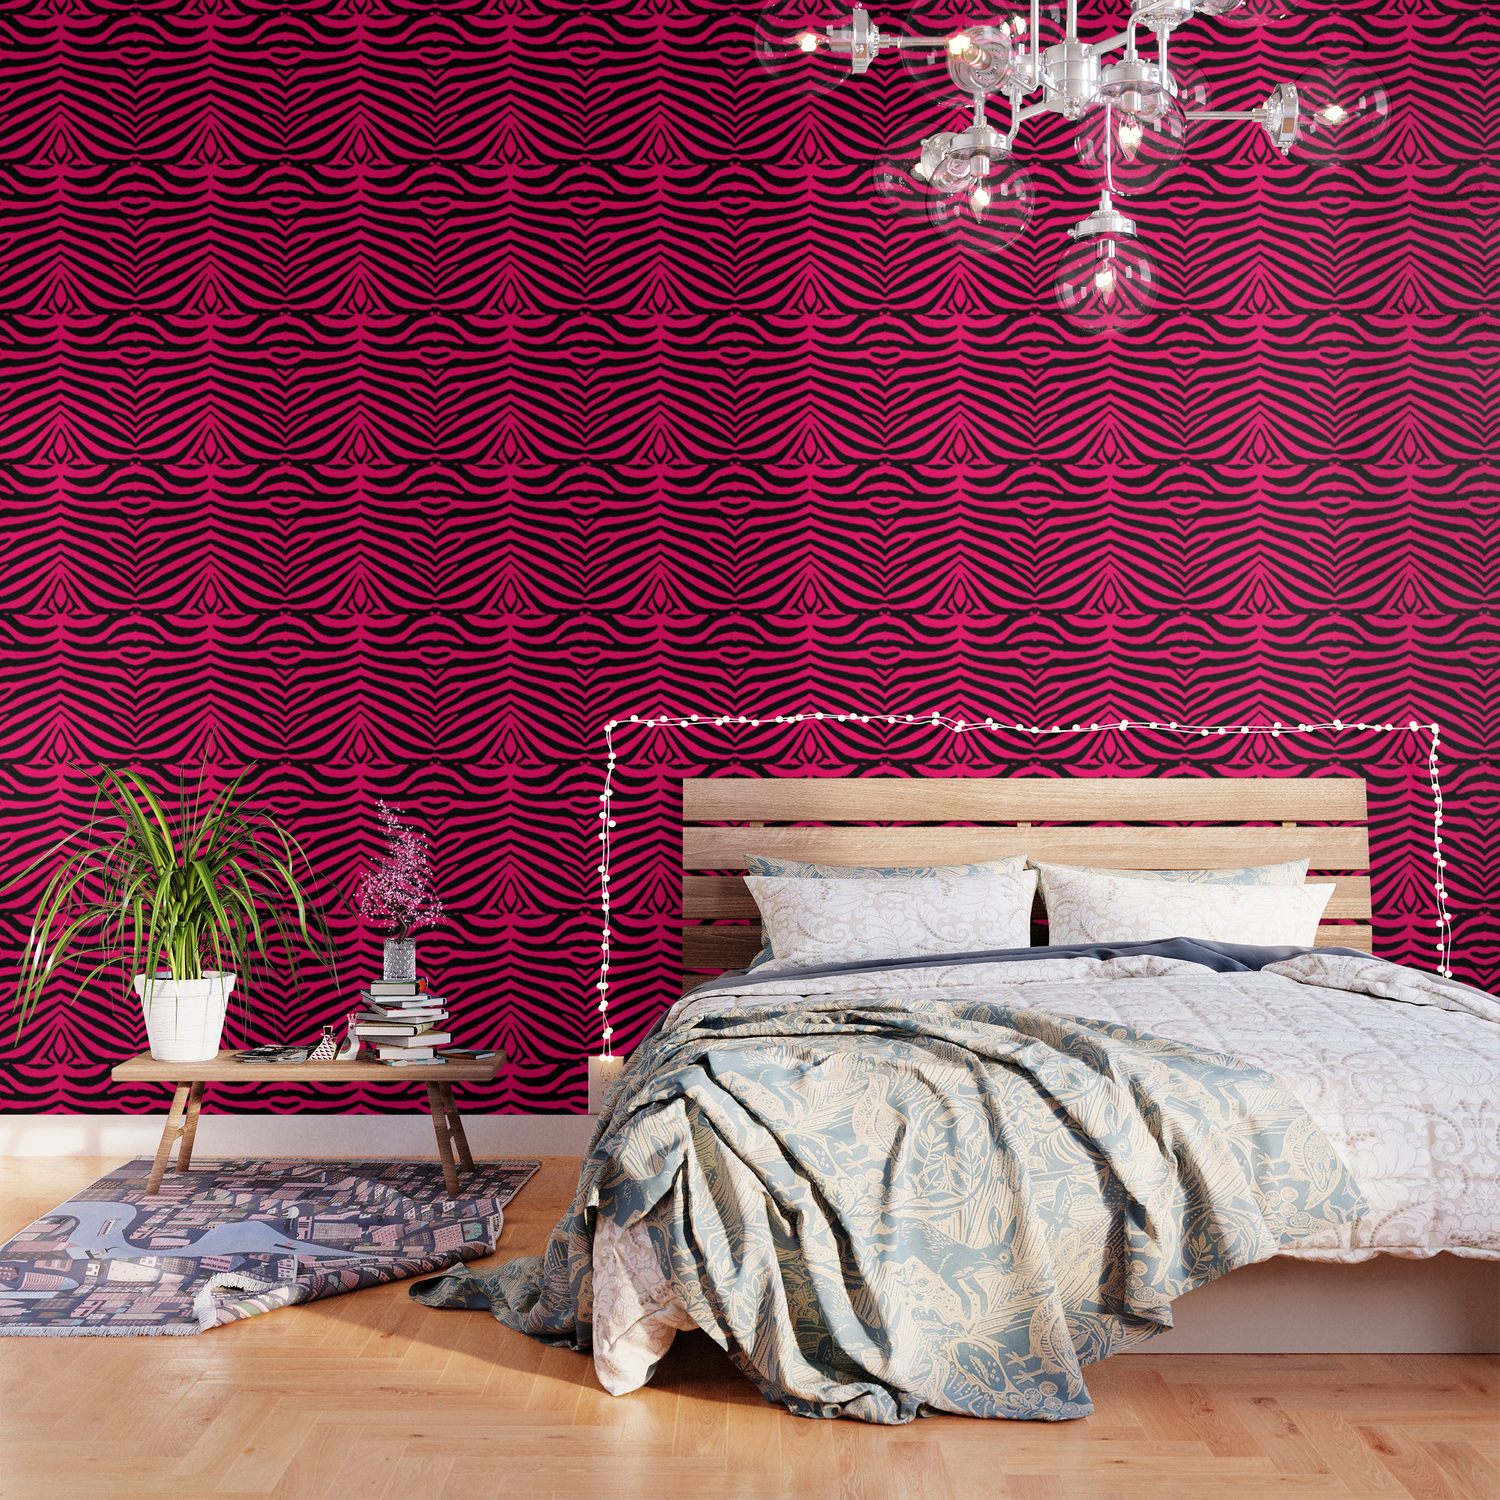 Pink Zebra Room Wallpapers